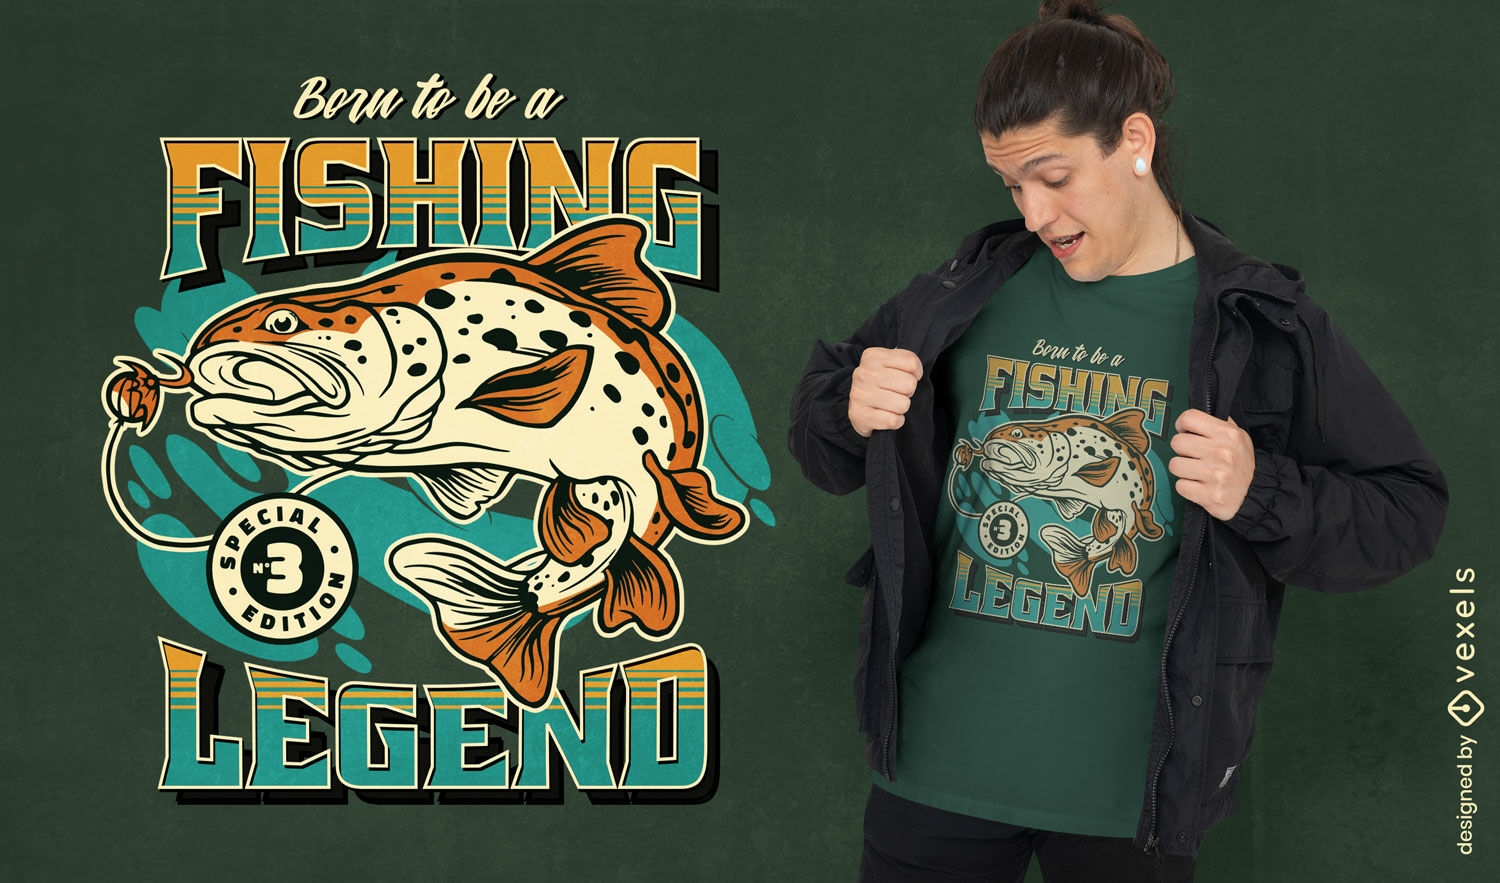 Dise?o de camiseta retro leyenda de la pesca.